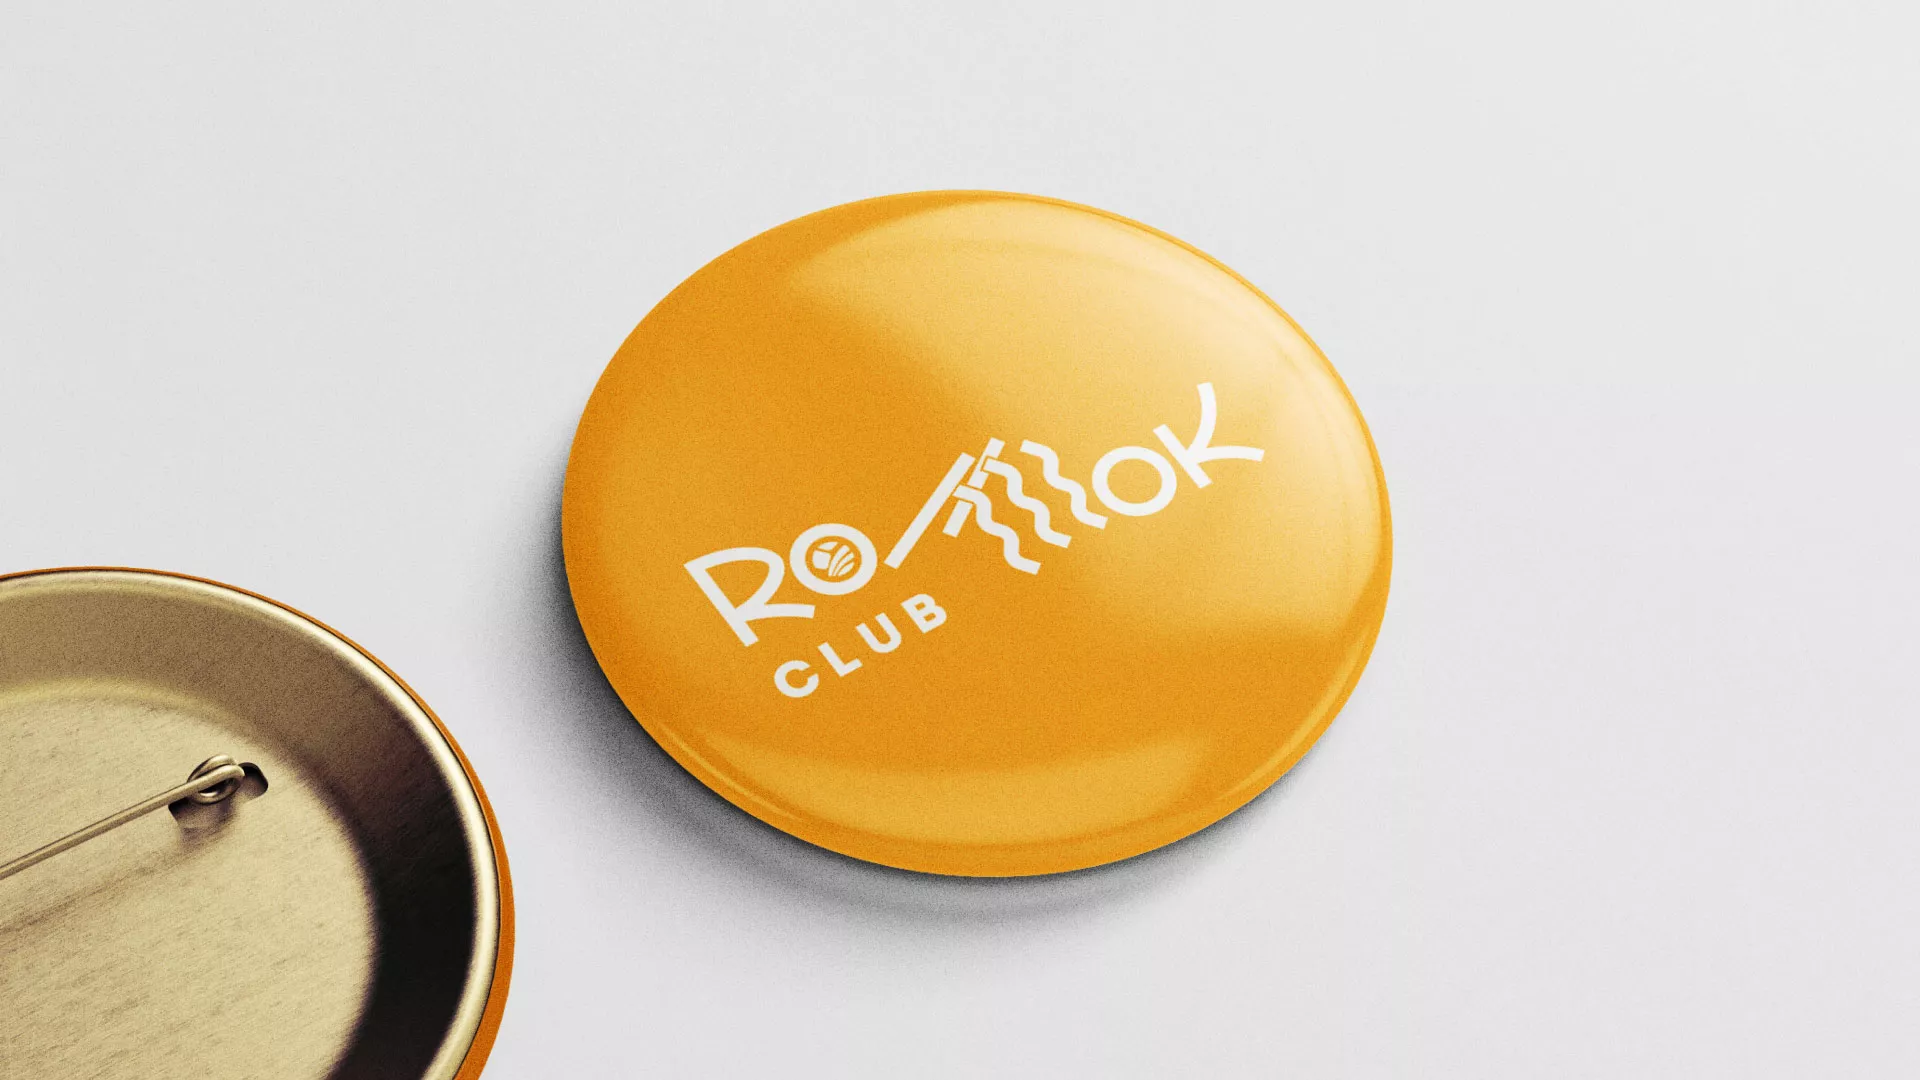 Создание логотипа суши-бара «Roll Wok Club» в Карабаново